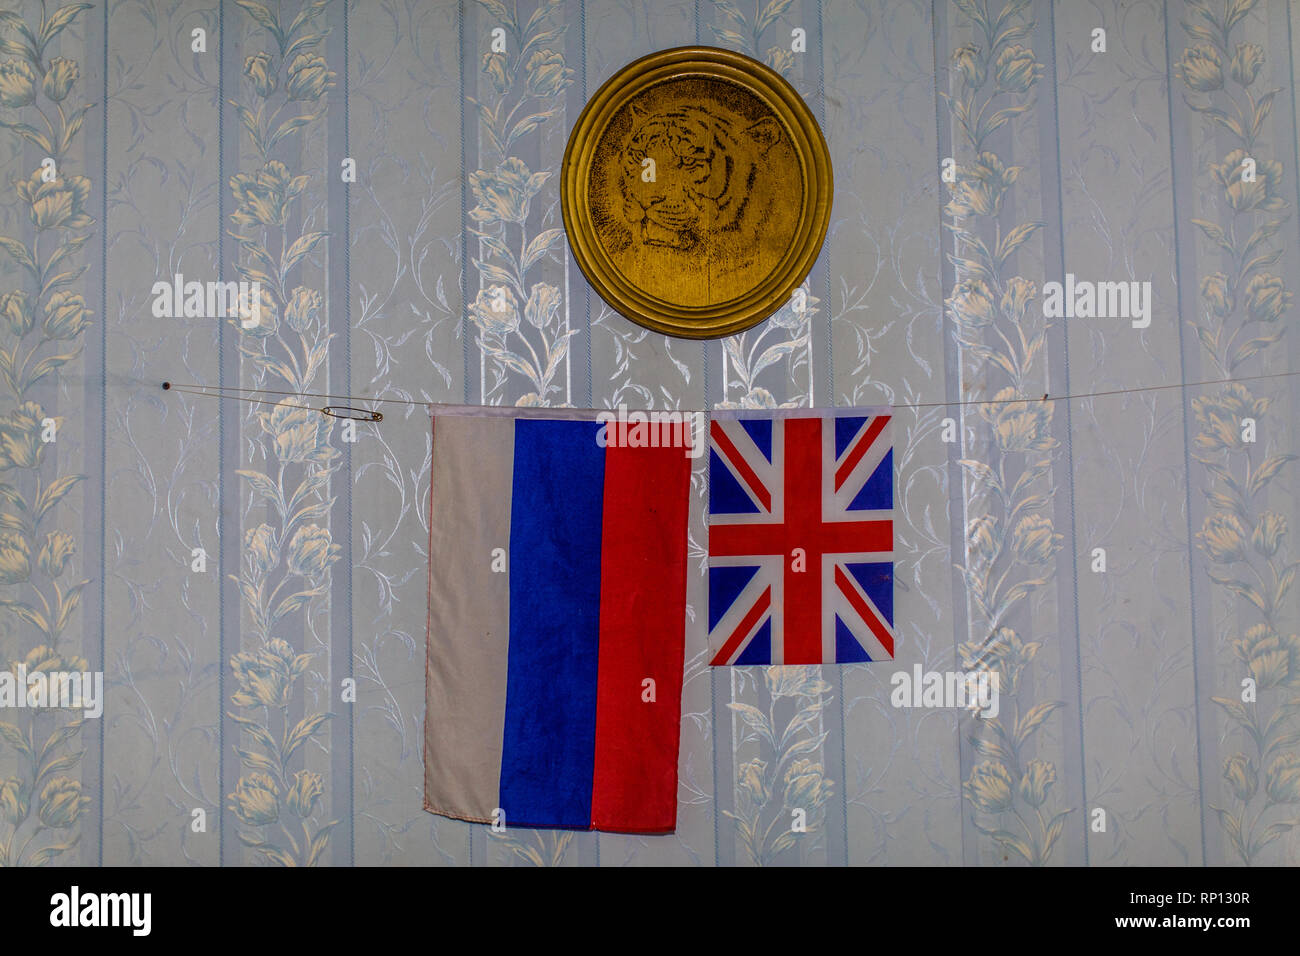 Las dos banderas del Reino Unido y Rusia están colgadas debajo de un plato de oro con el tigre siberiano en su centro. Foto de stock